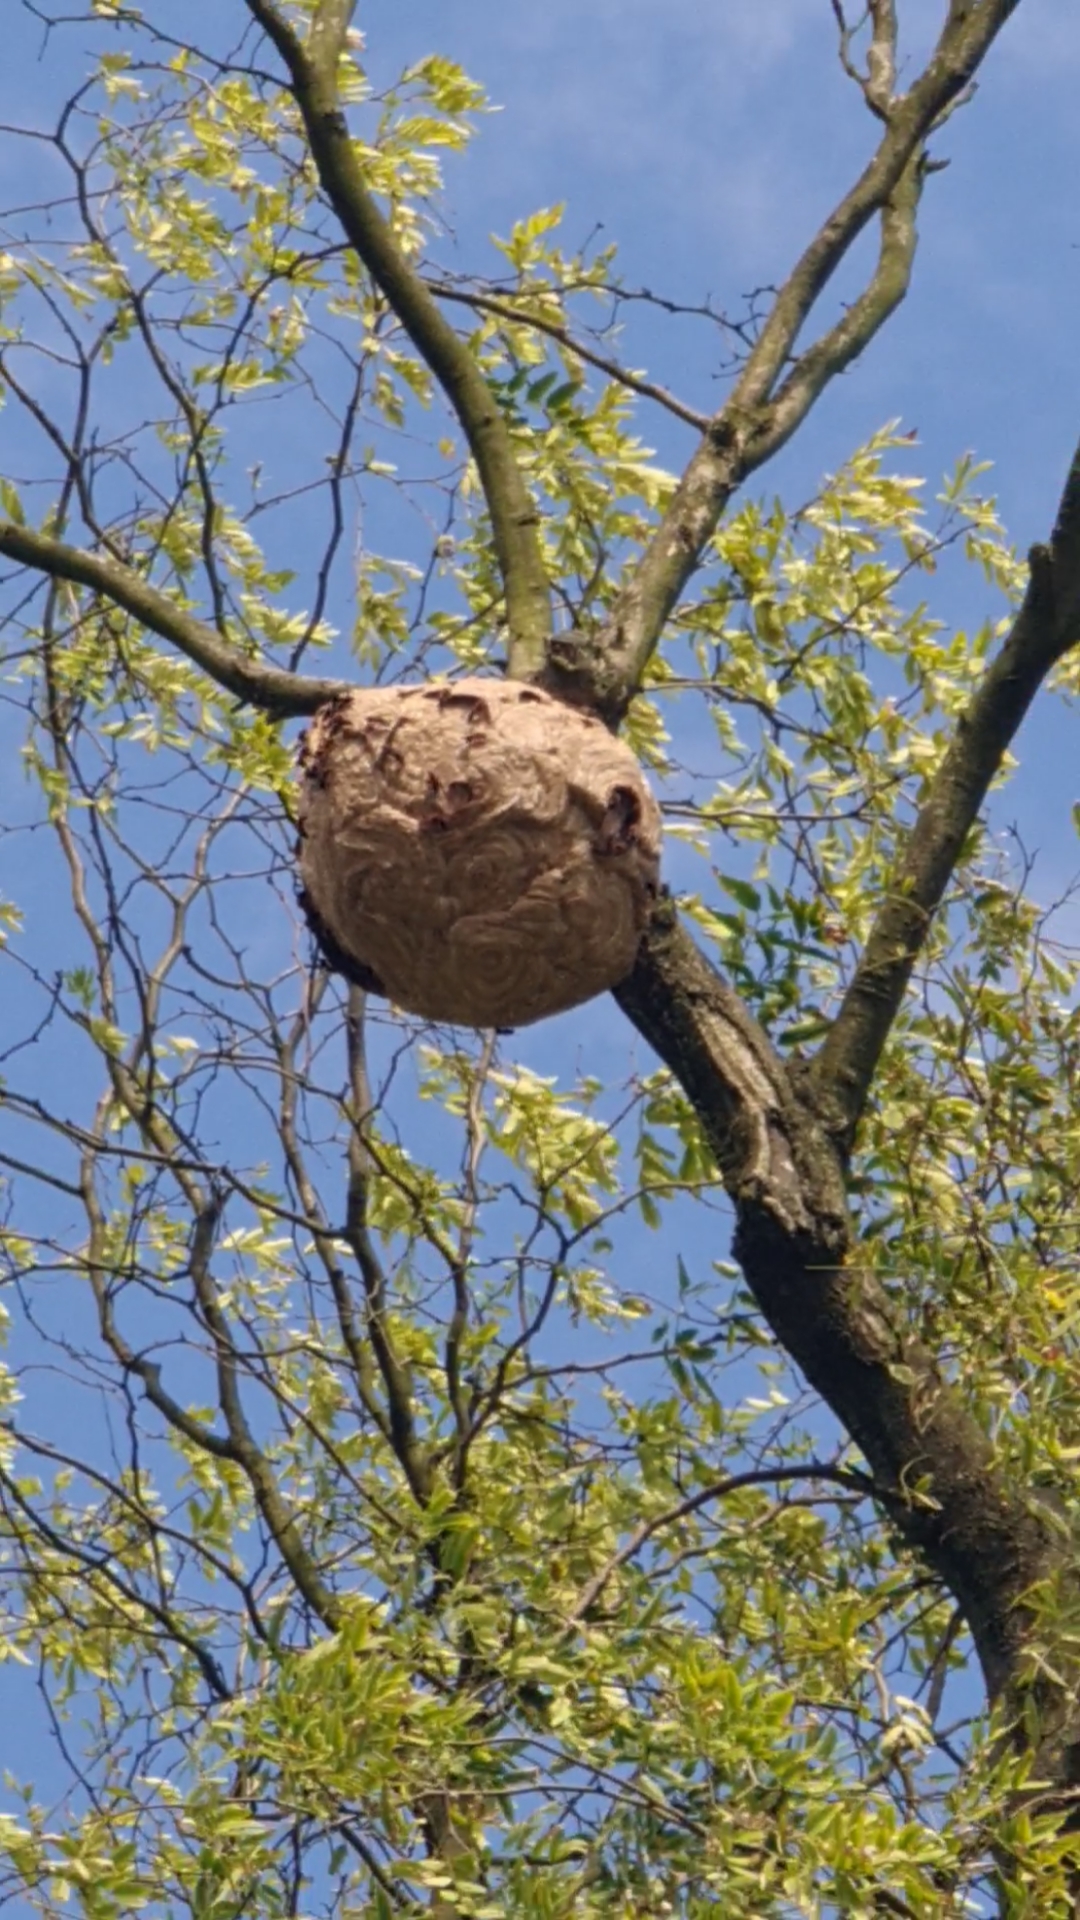 今天出去户外走走,发现水桶大小的蜂巢,这么大的还是很少见